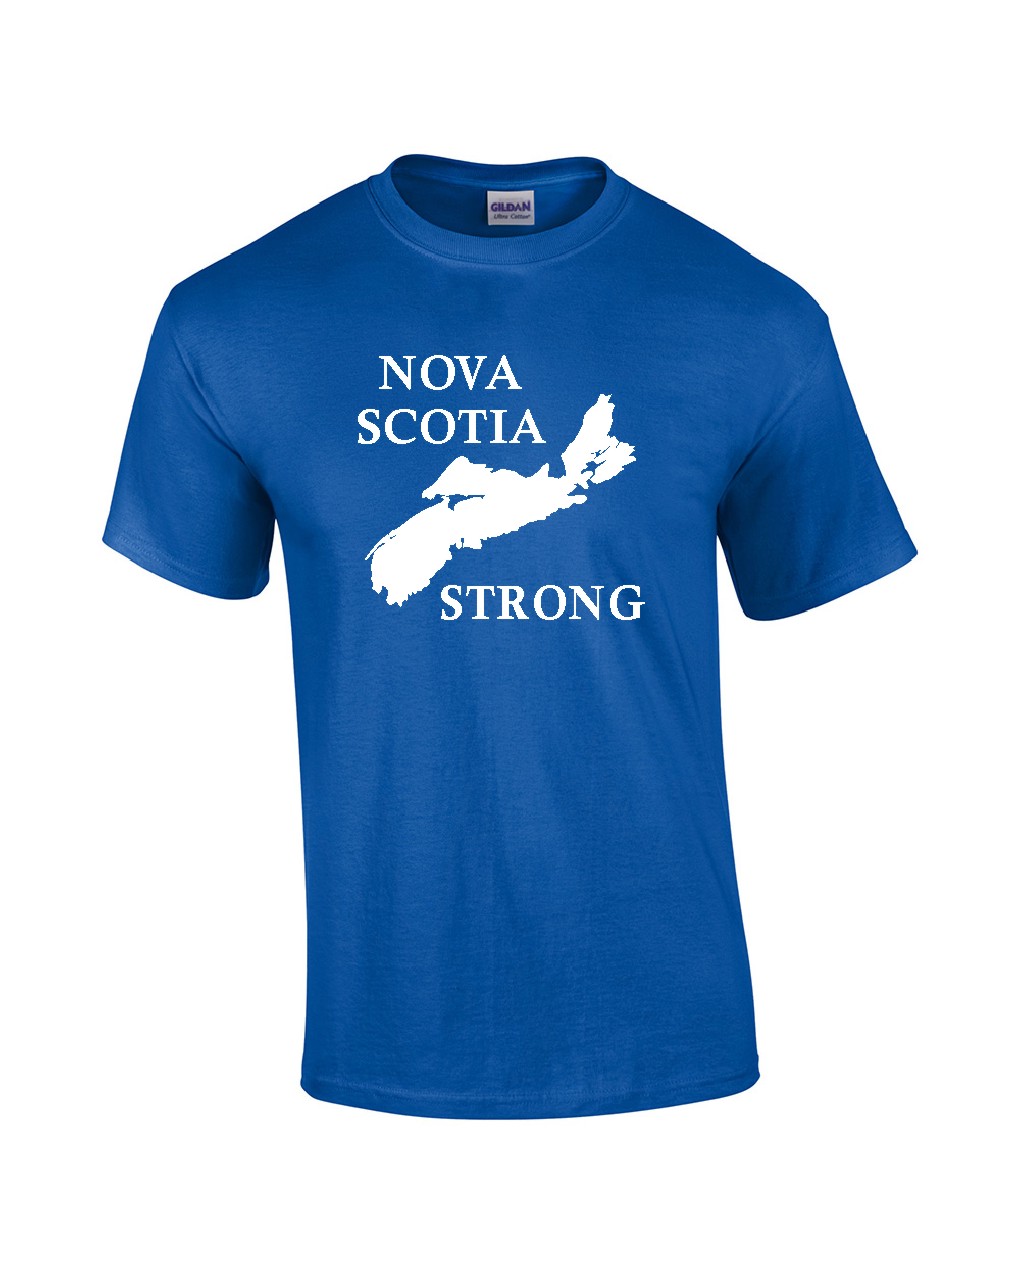 Nova Scotia Strong